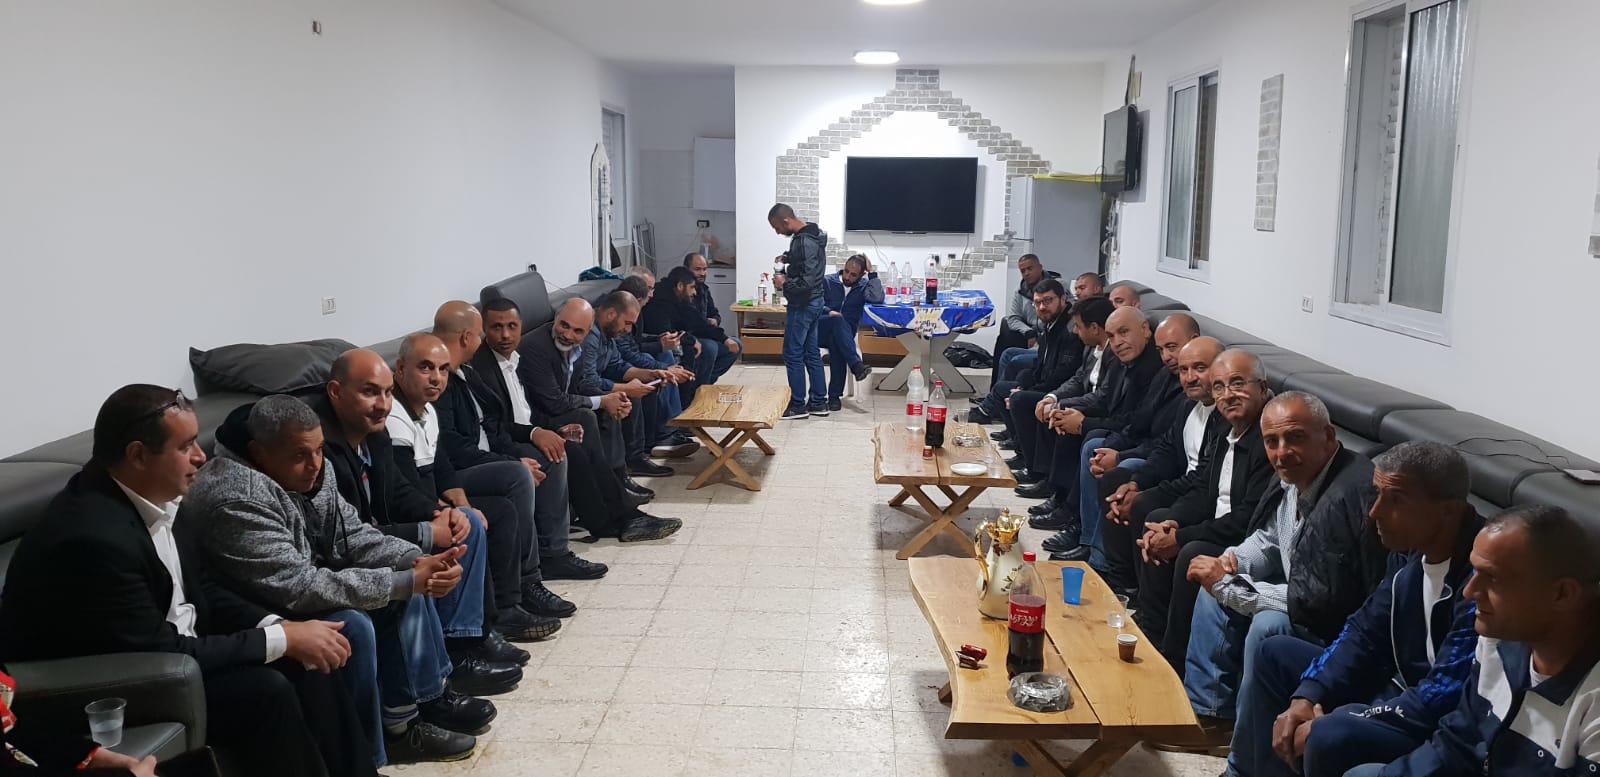 اللد: اجتماع طارئ للجنة الشعبية واعضاء البلدية العرب بعد هدم منزل ال شعبان